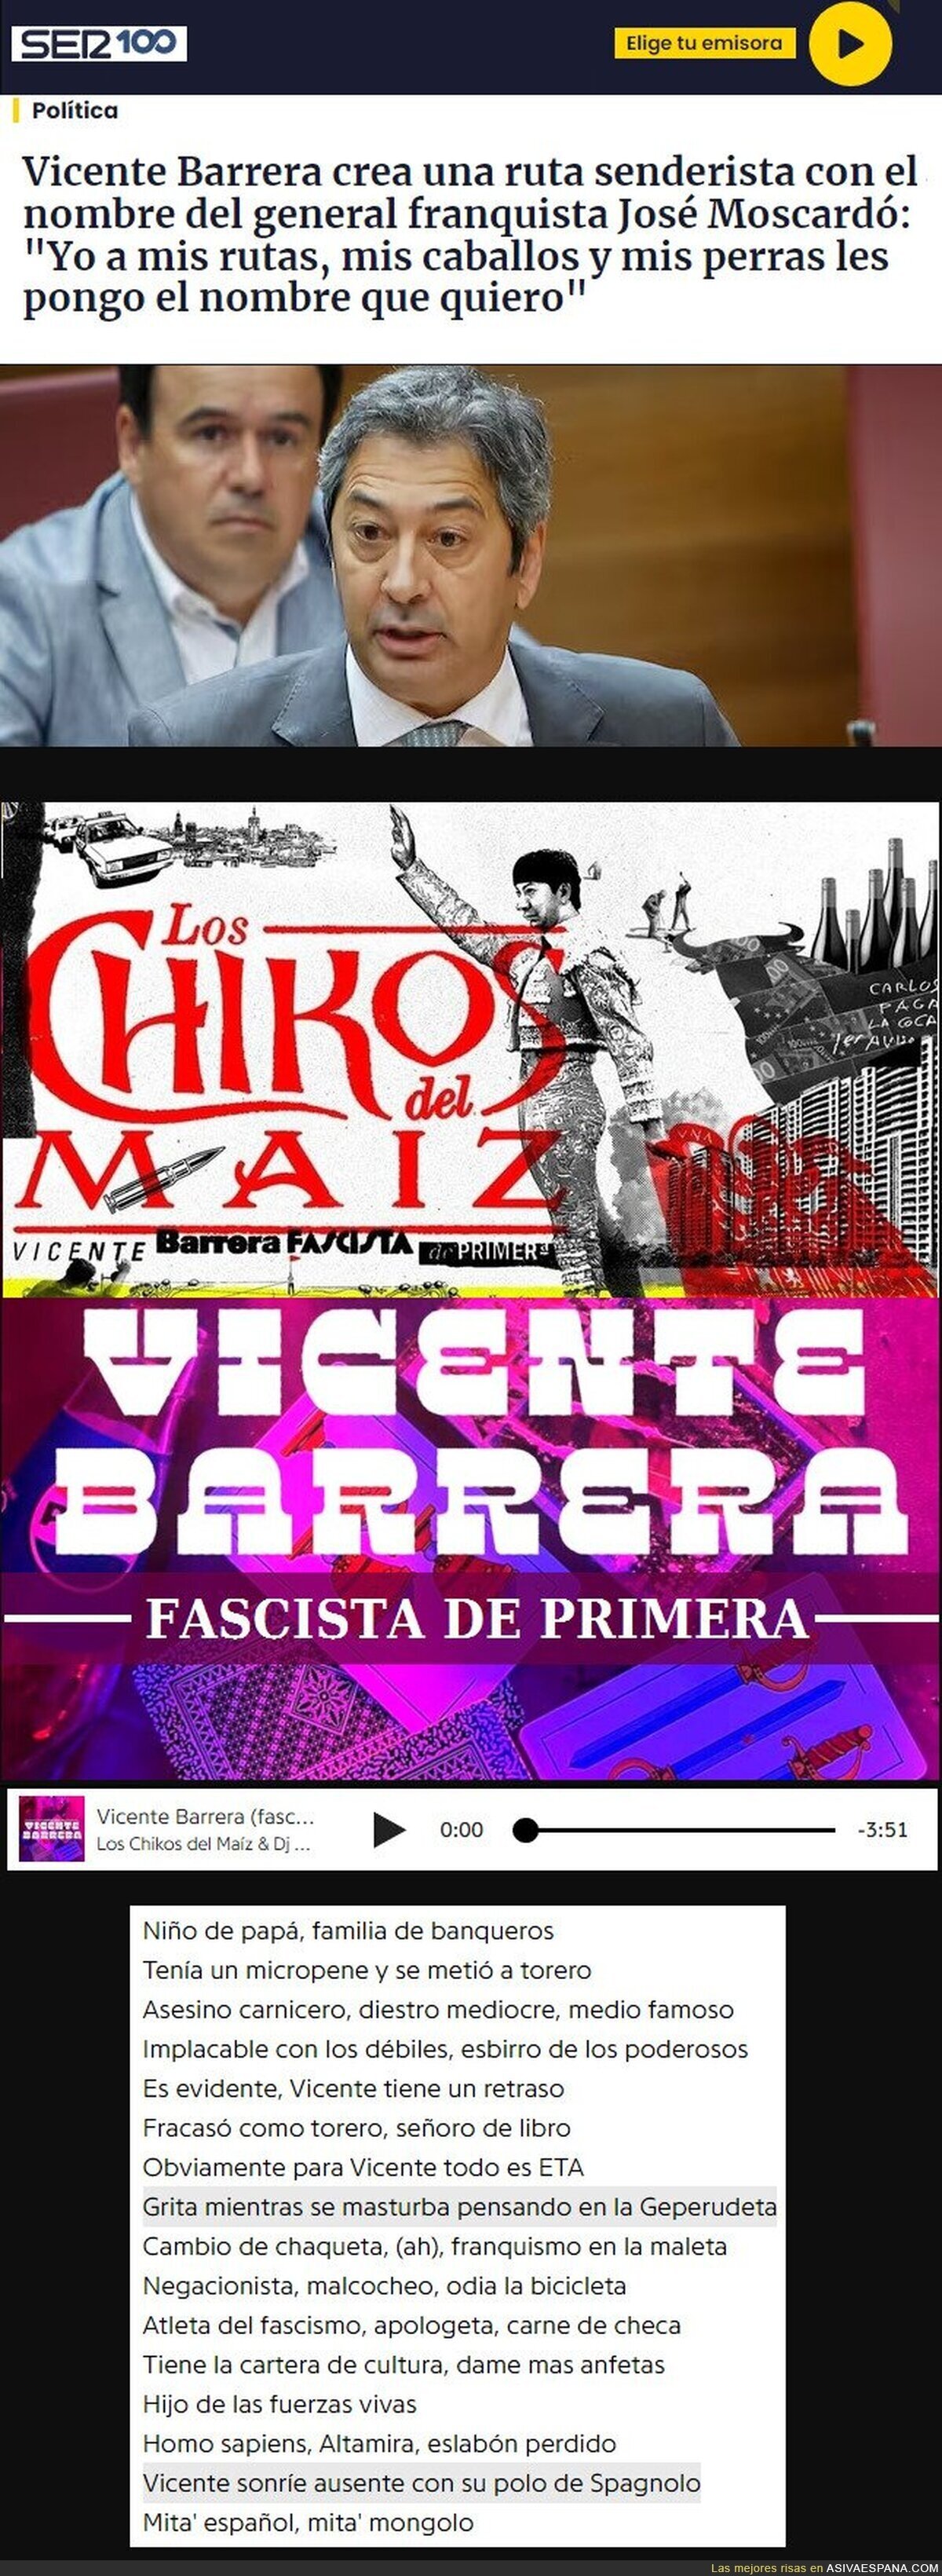 Vicente Barrera, Fascista de Primera. Ya lo cantaban 'Los Chikos del Maiz'